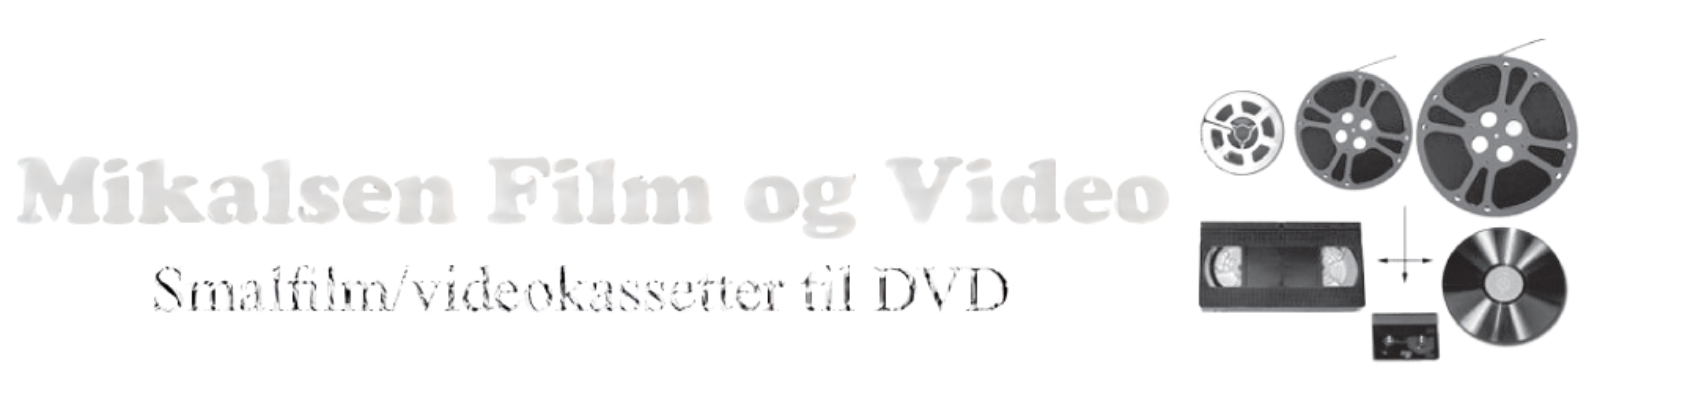 Mikalsen Film og Video logo